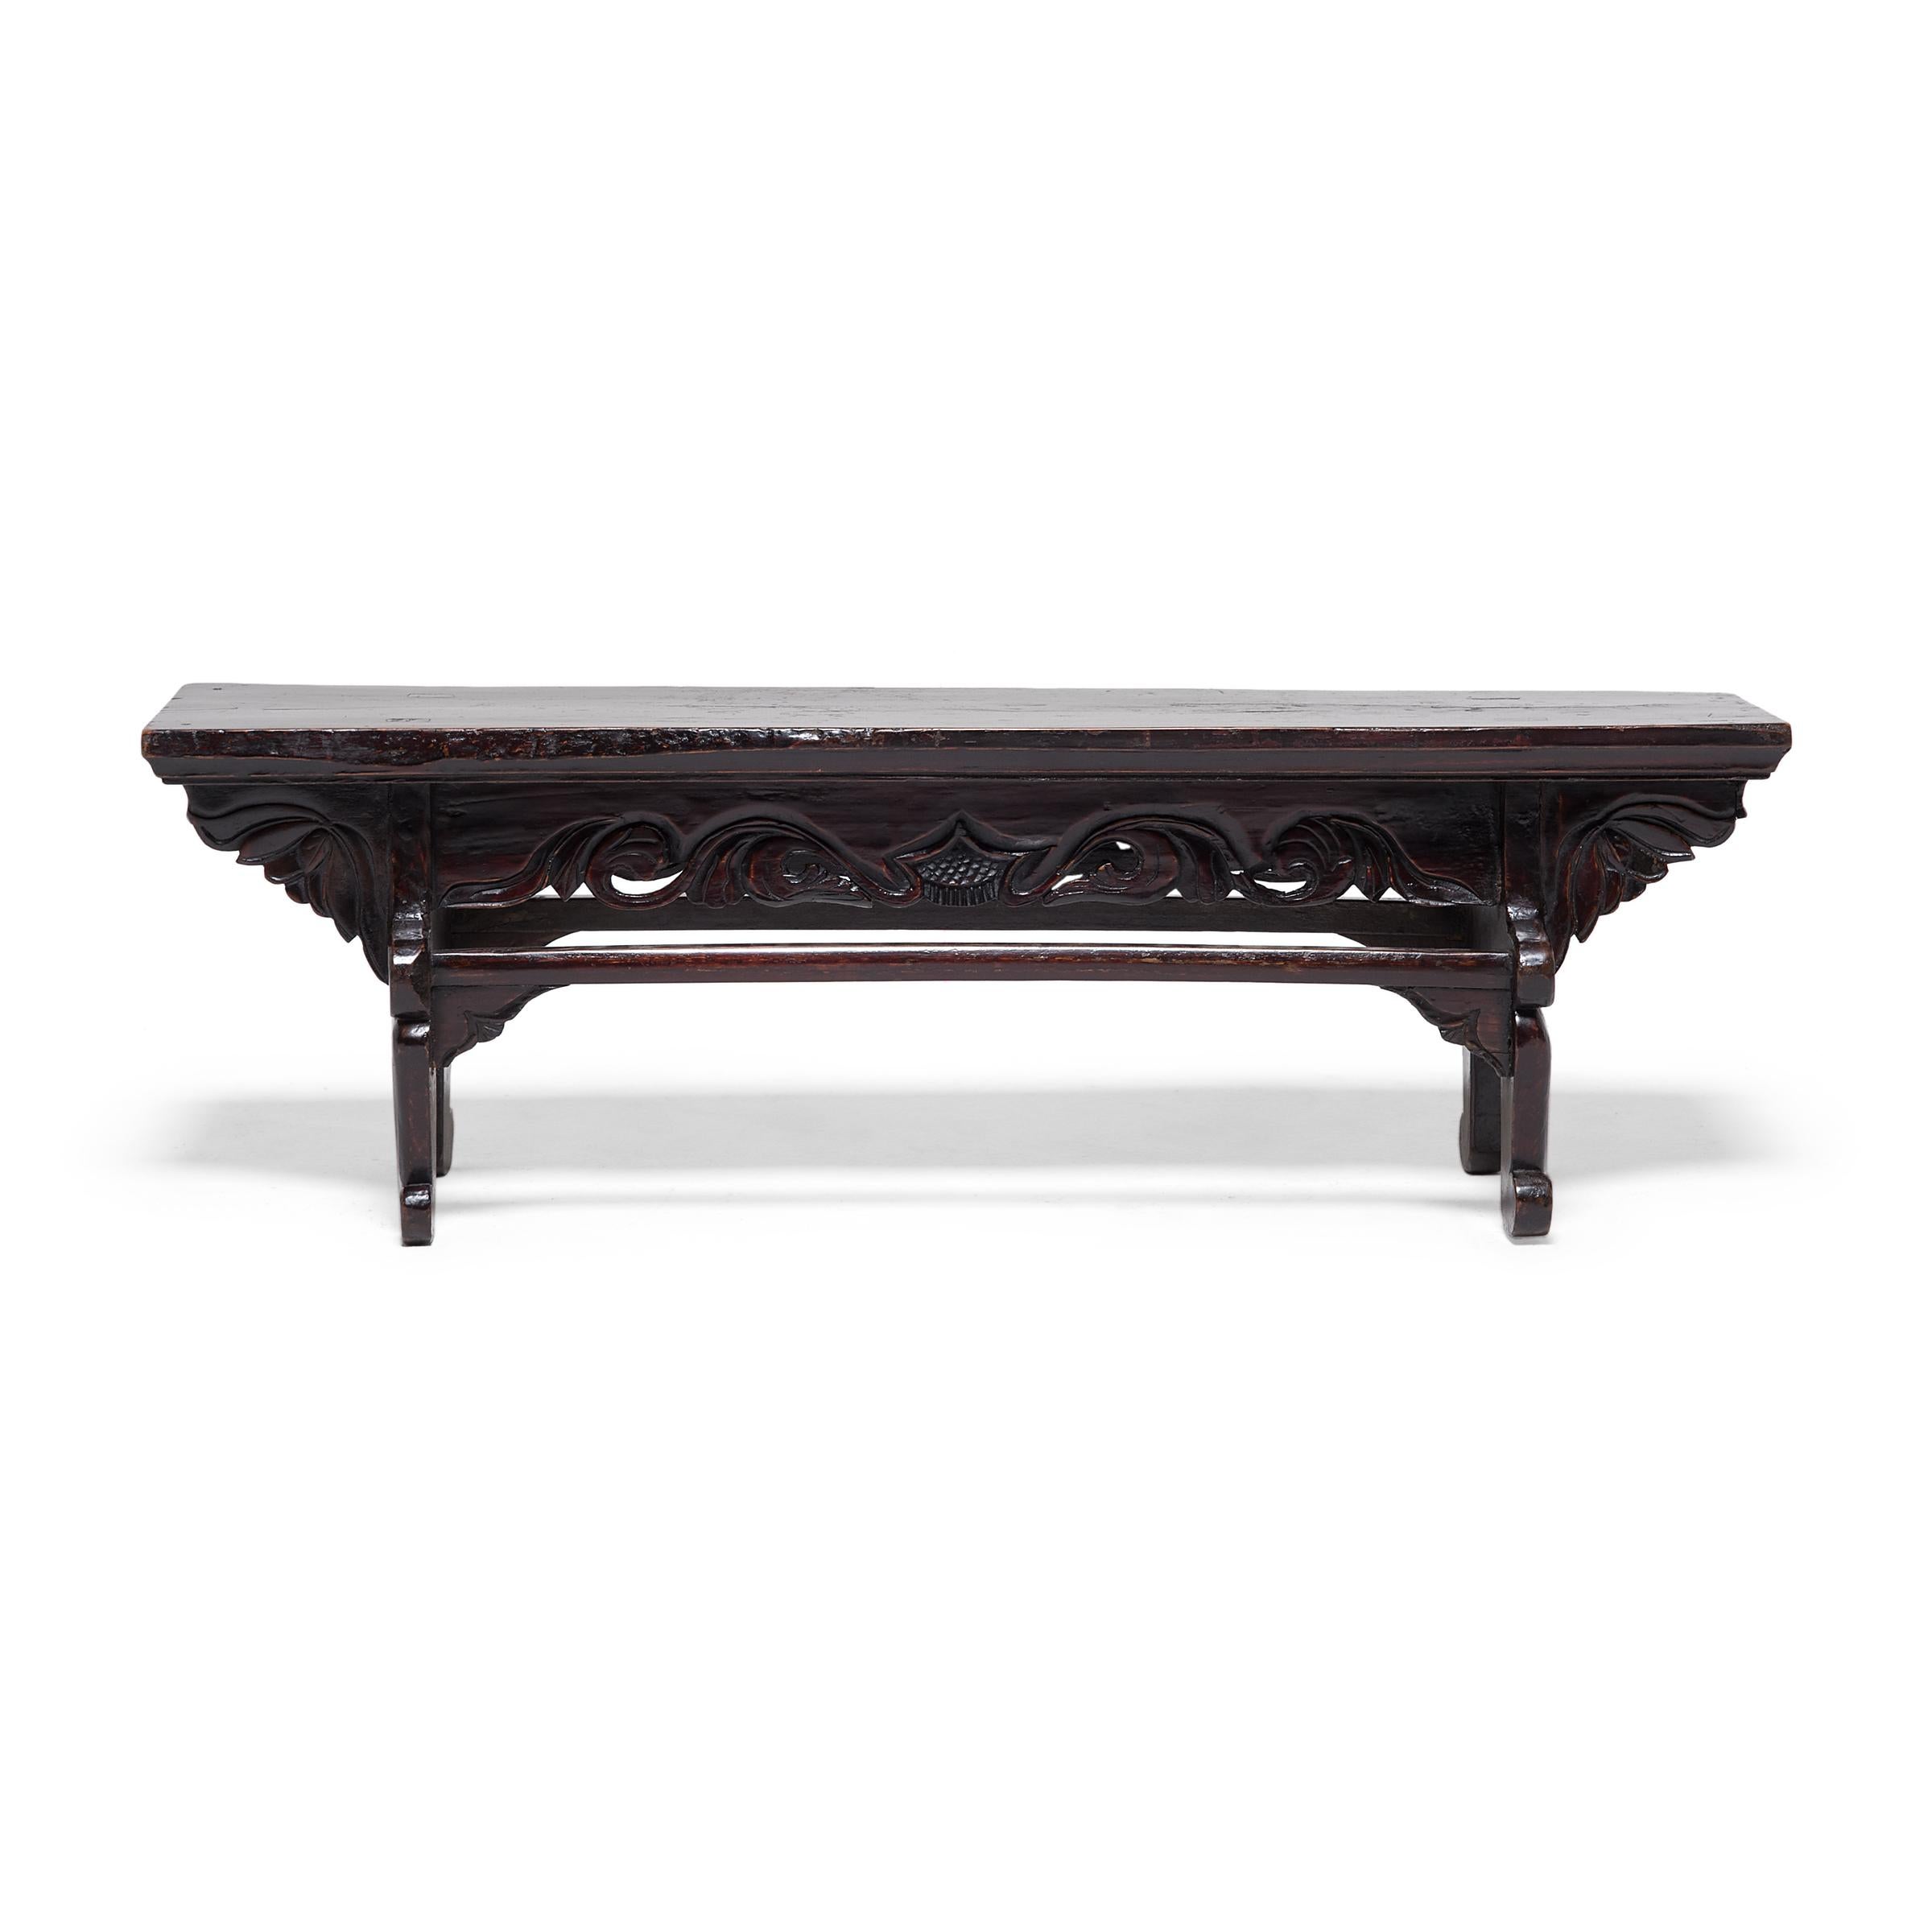 Dieser niedrige Tisch aus dem 19. Jahrhundert ist eigentlich eine Trittstufe, die den Ein- und Ausstieg aus einer erhöhten Liege erleichtert. Die aus nordischem Ulmenholz (Yumu) gefertigte Stufe hat eine Bohlenoberseite, geschnitzte Lotuszwickel und